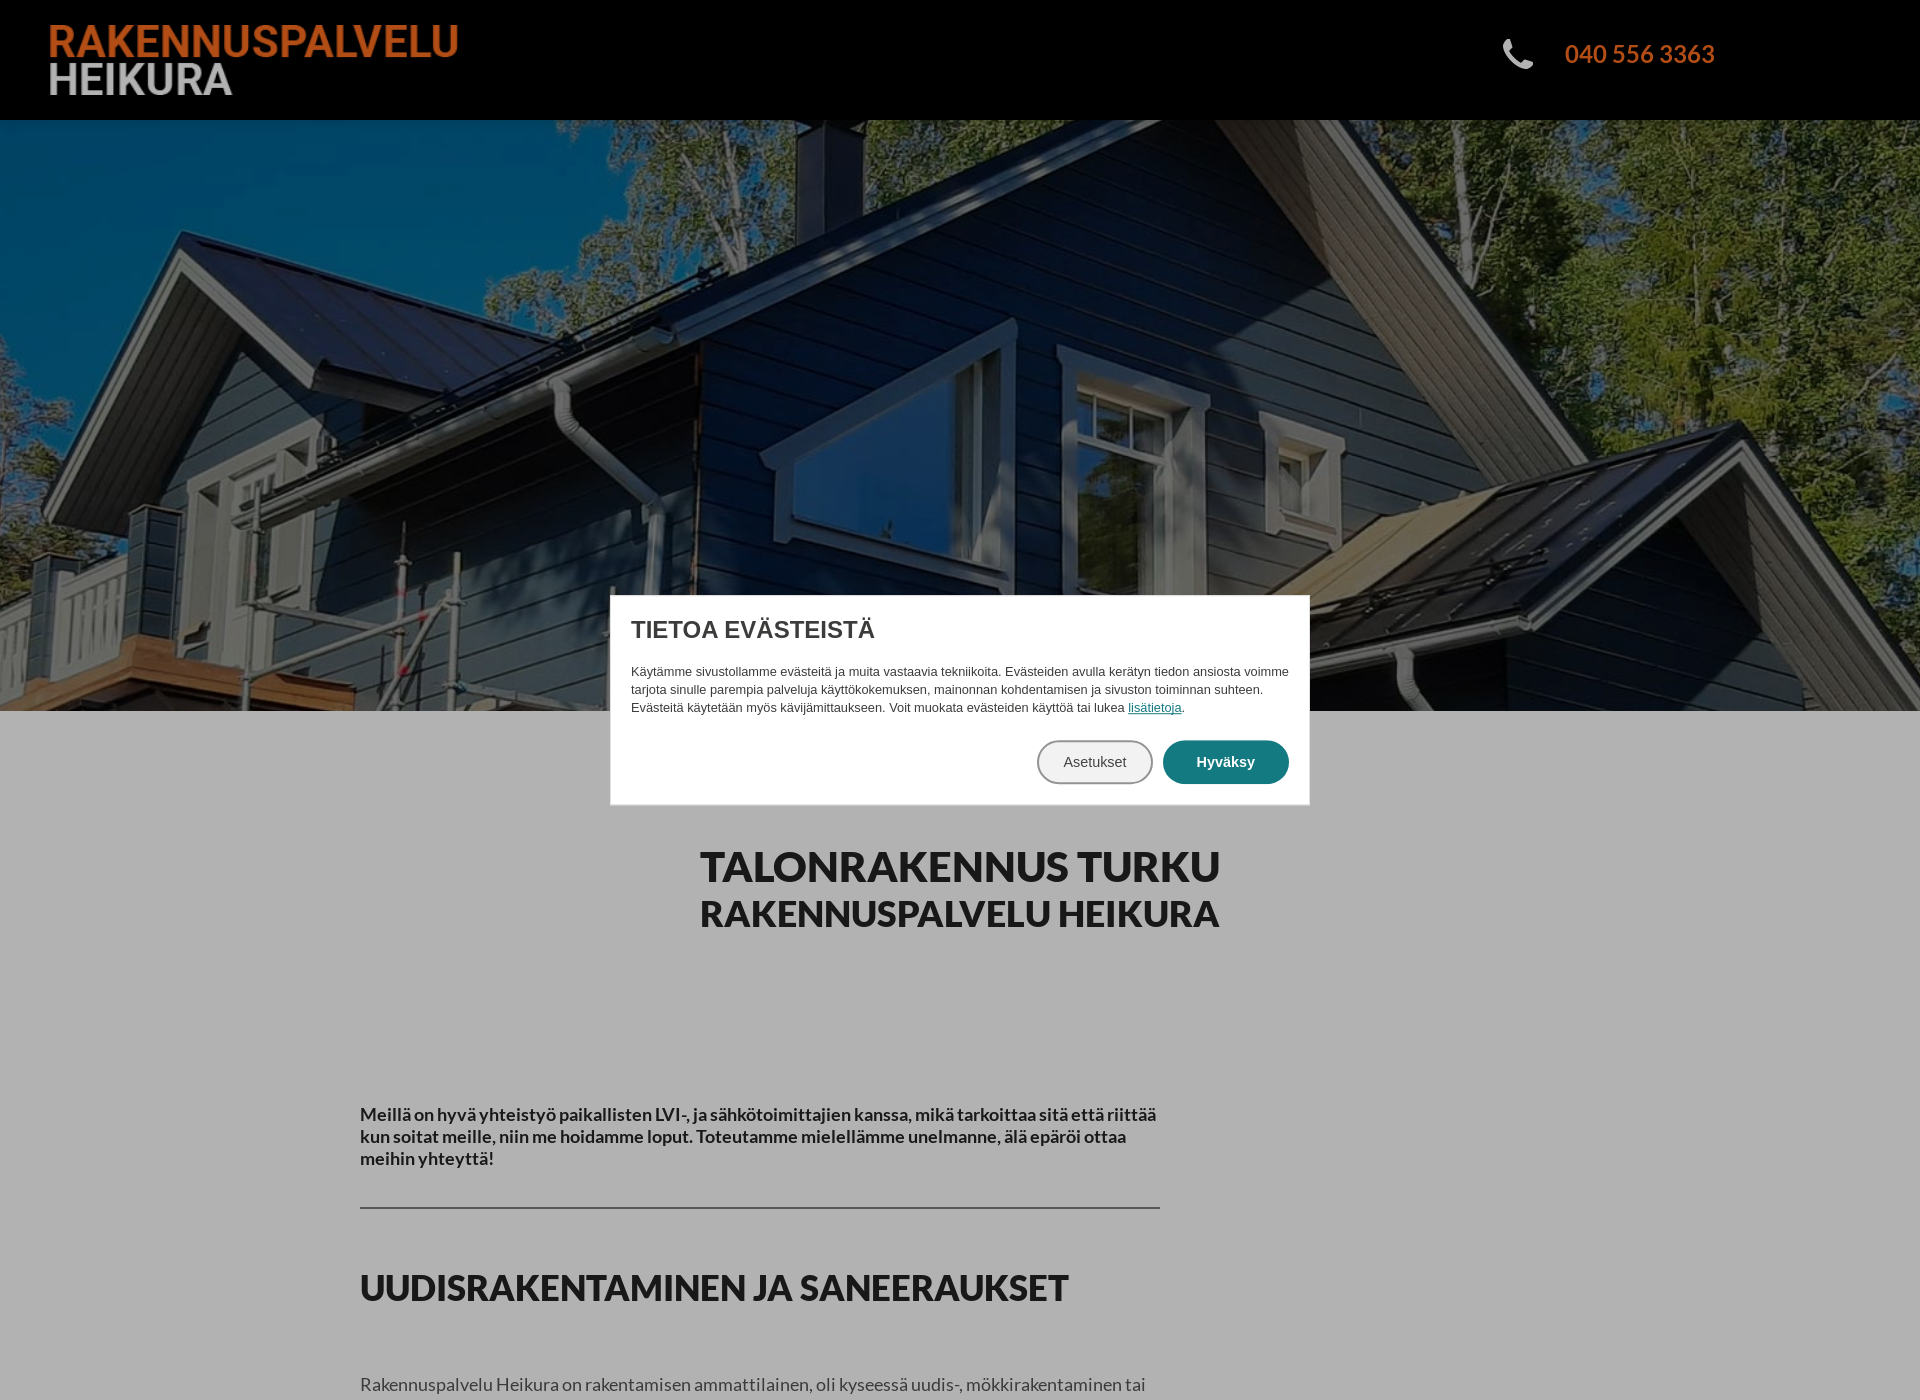 Näyttökuva talonrakennusturku.fi